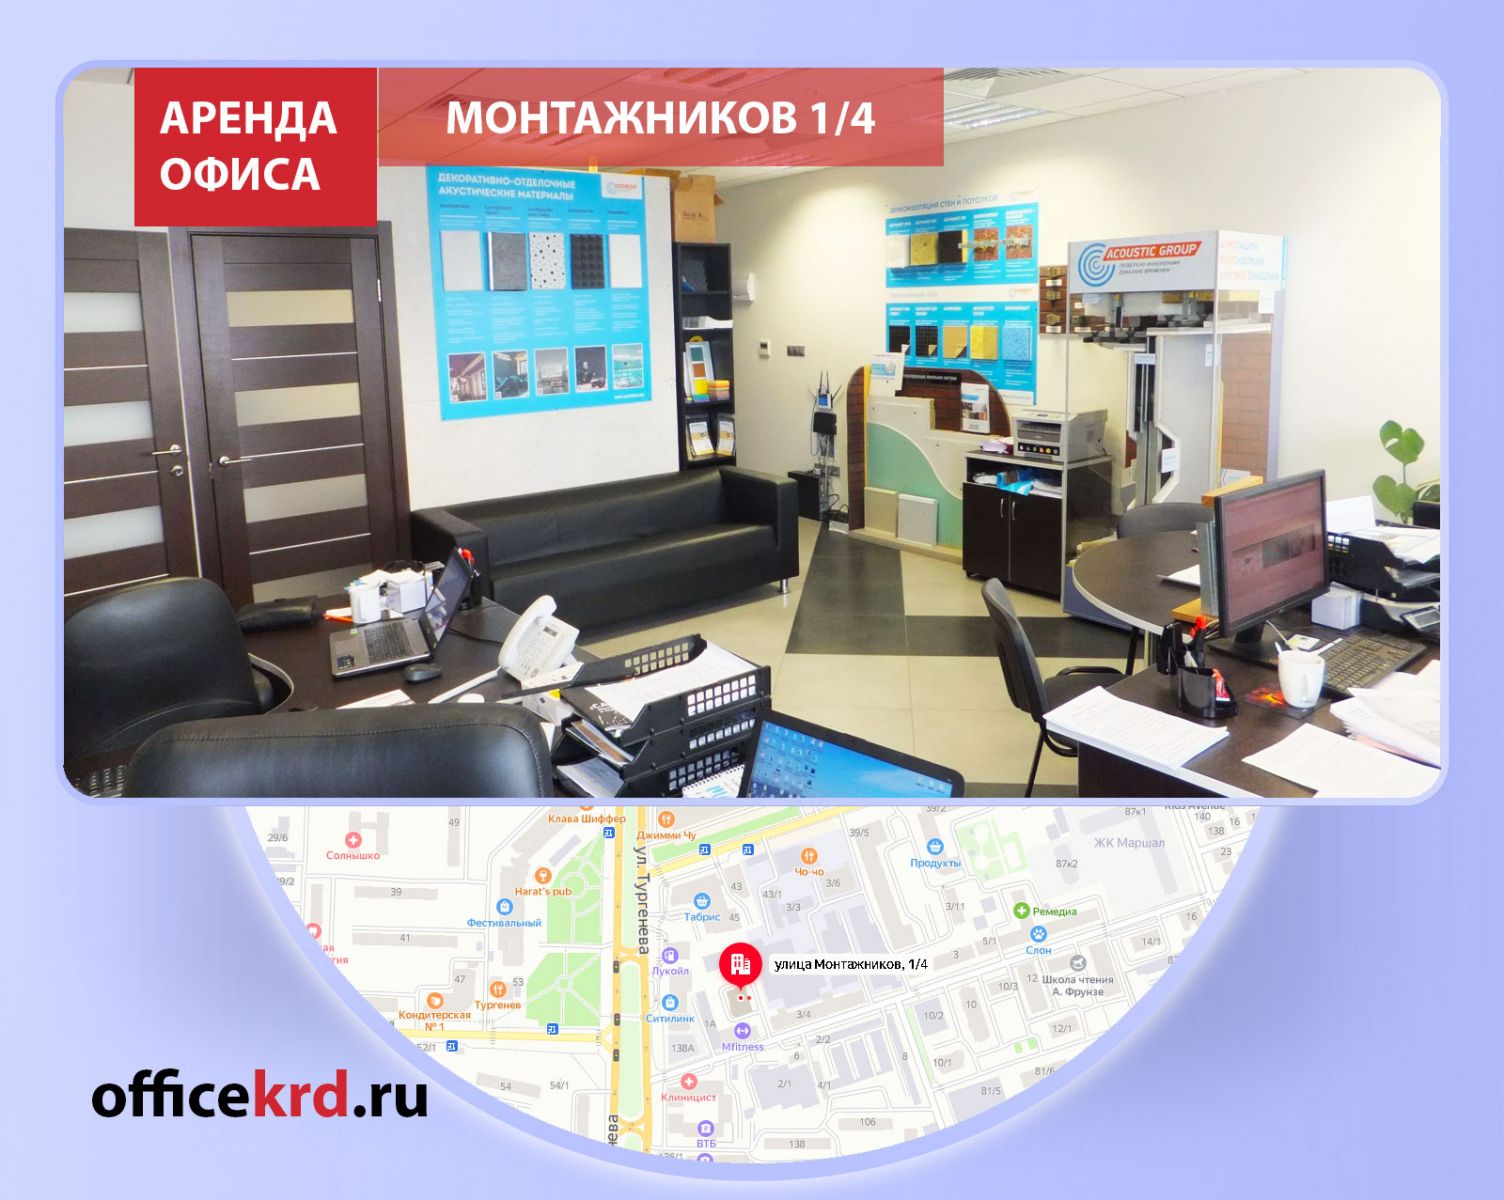 Аренда офис центр собственник зарегистрировать юр адрес в москве